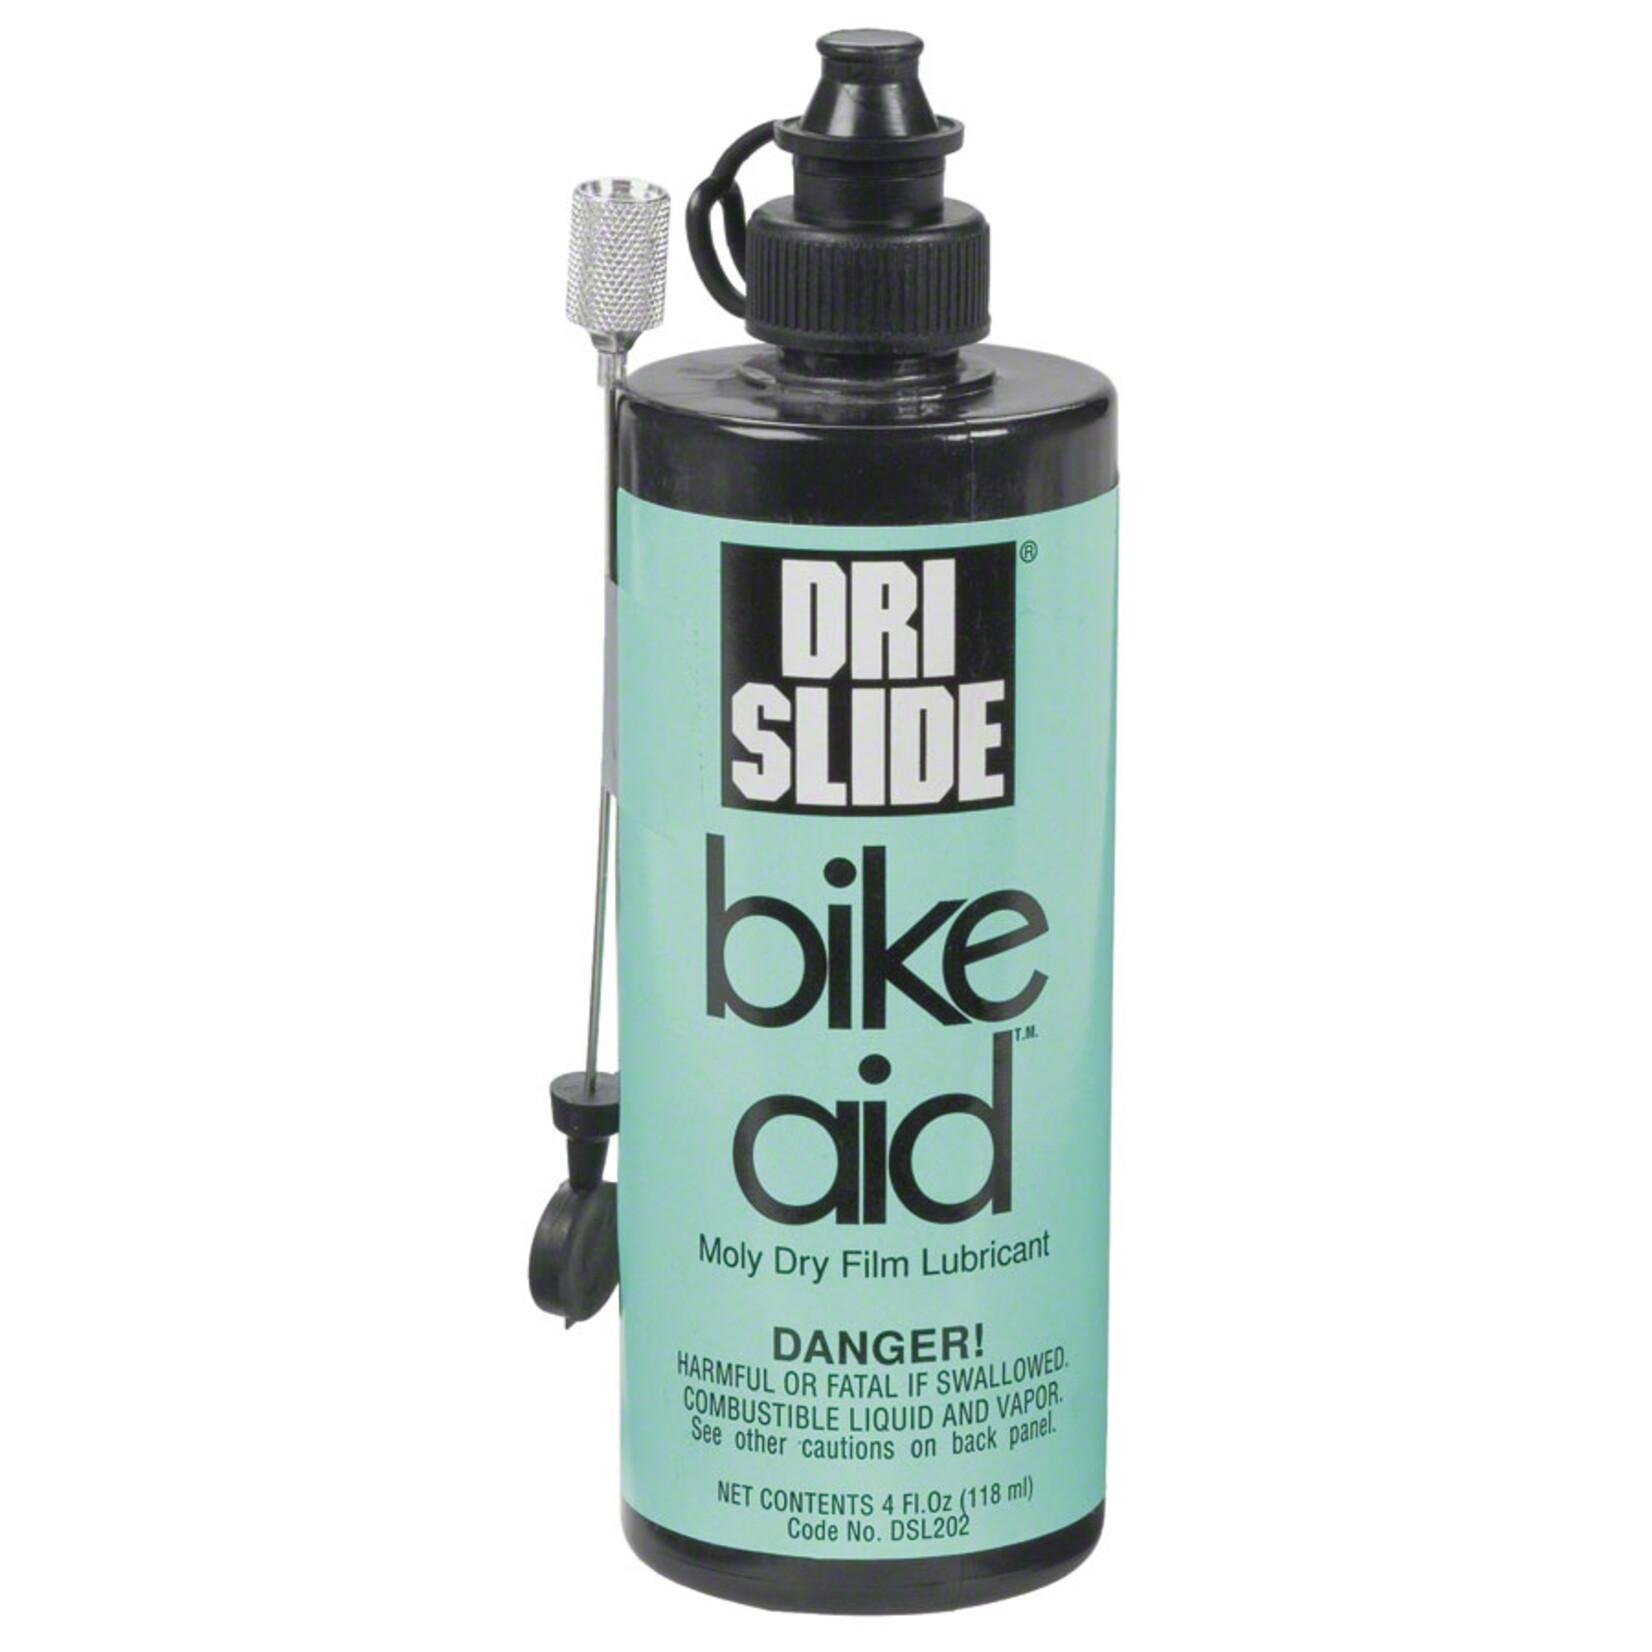 Bike-Aid Bike-Aid Dri-Slide Bike Chain Lube - 4 fl oz, Drip